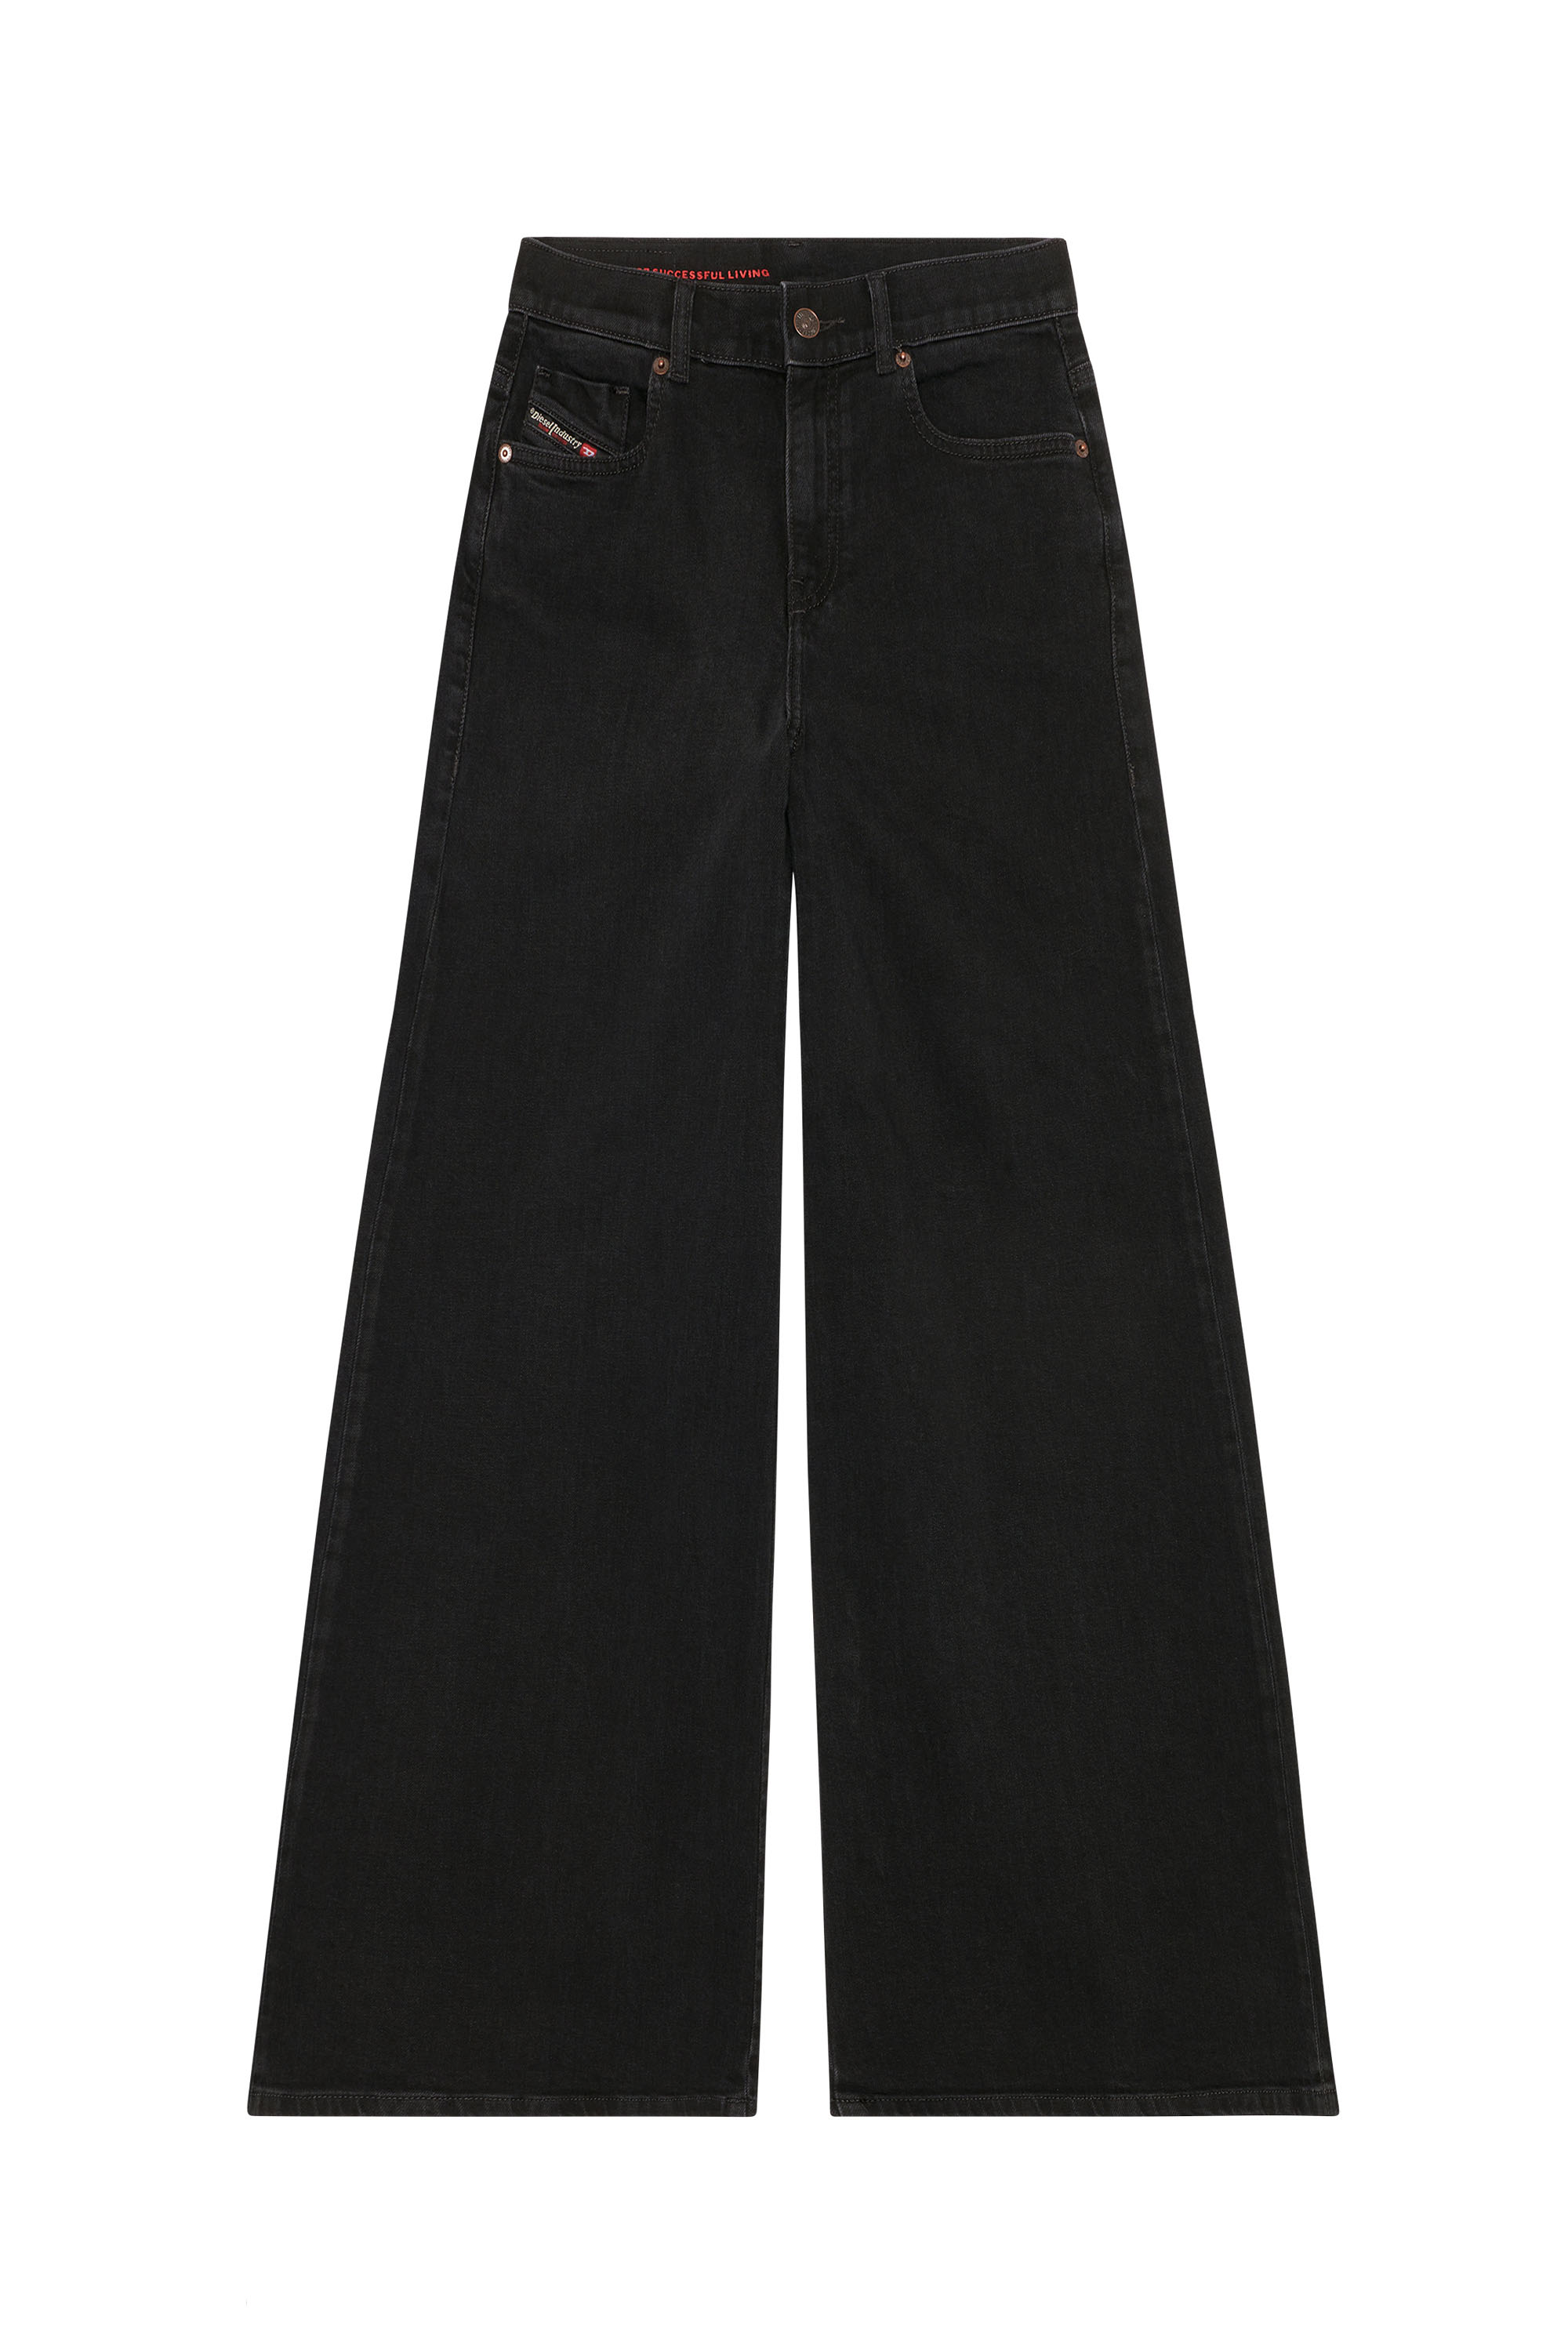 1978 D-Akemi Woman: bootcutandflare Black/Dark grey Jeans | Diesel